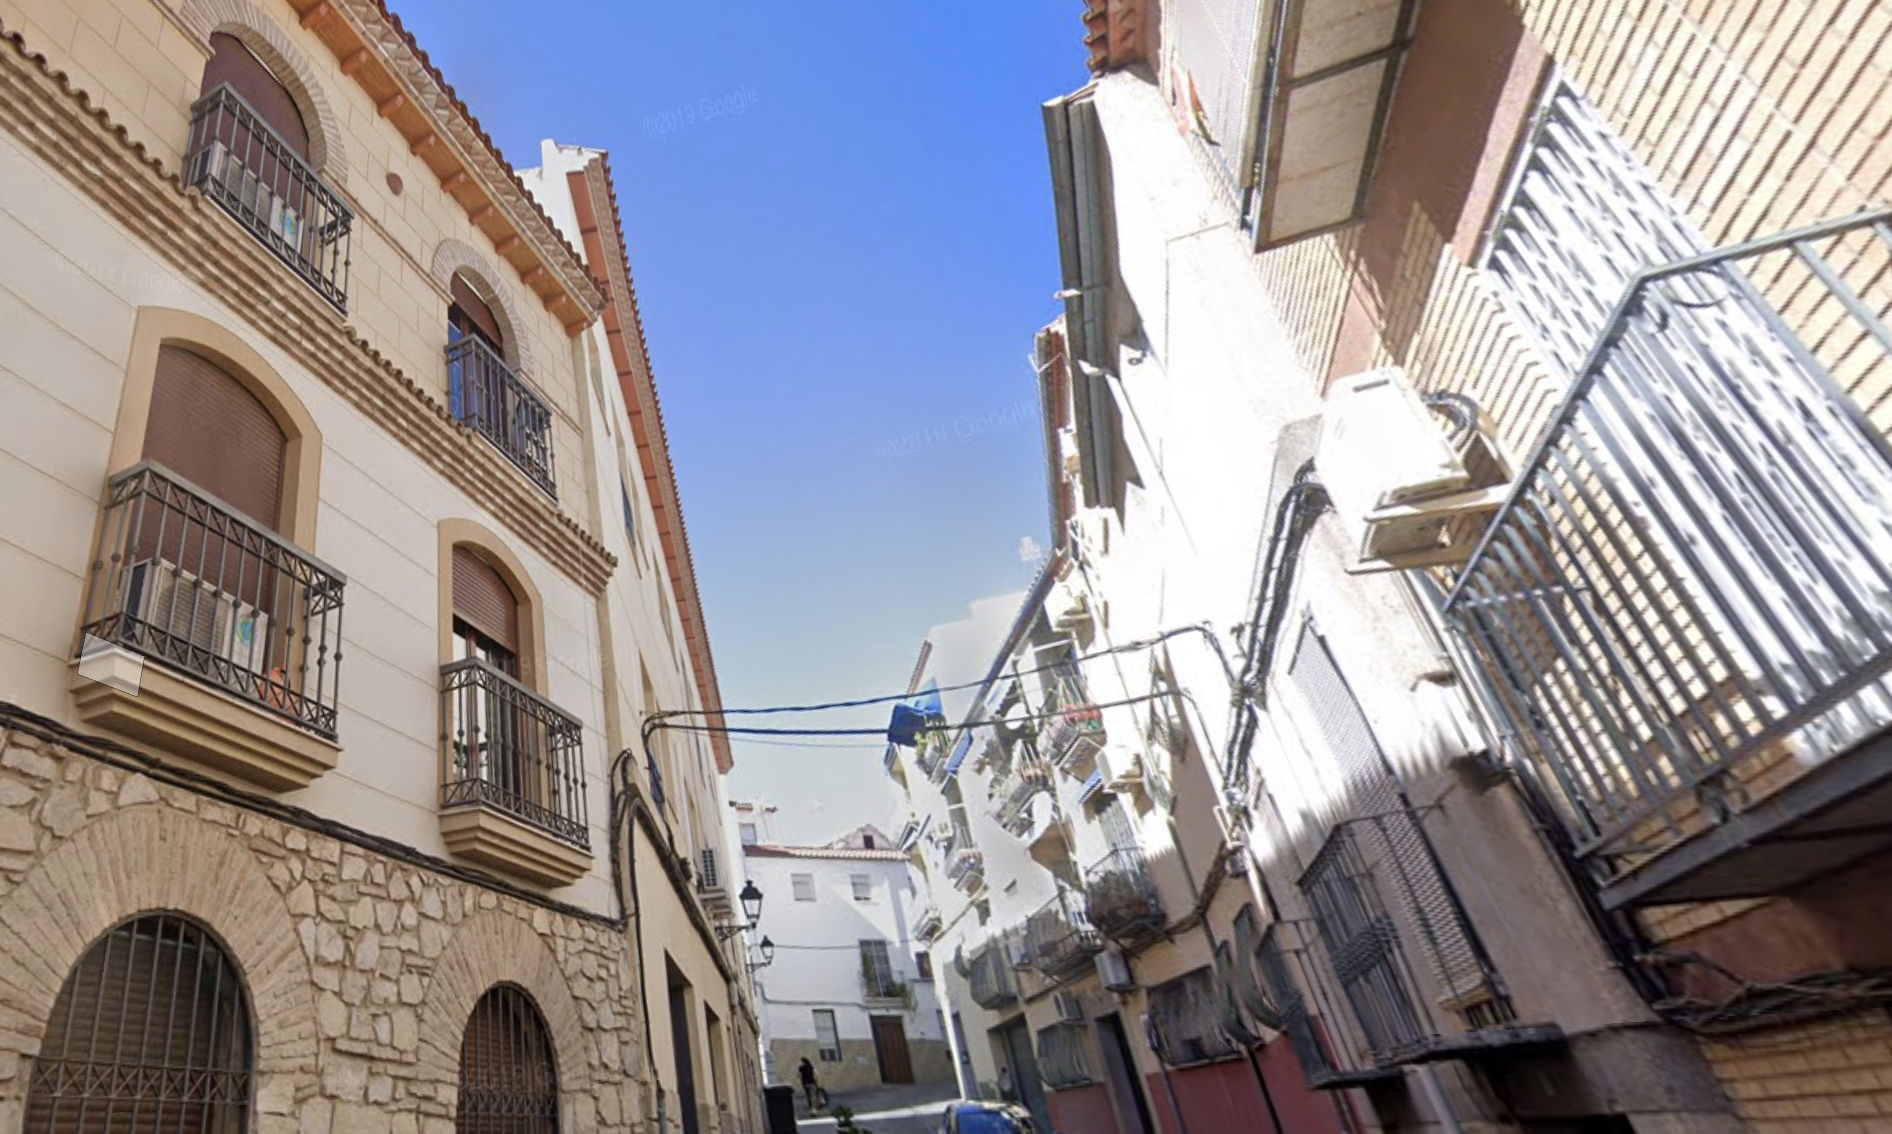 Calle de Jaén donde ocurrieron los hechos, en una imagen de Google Maps.